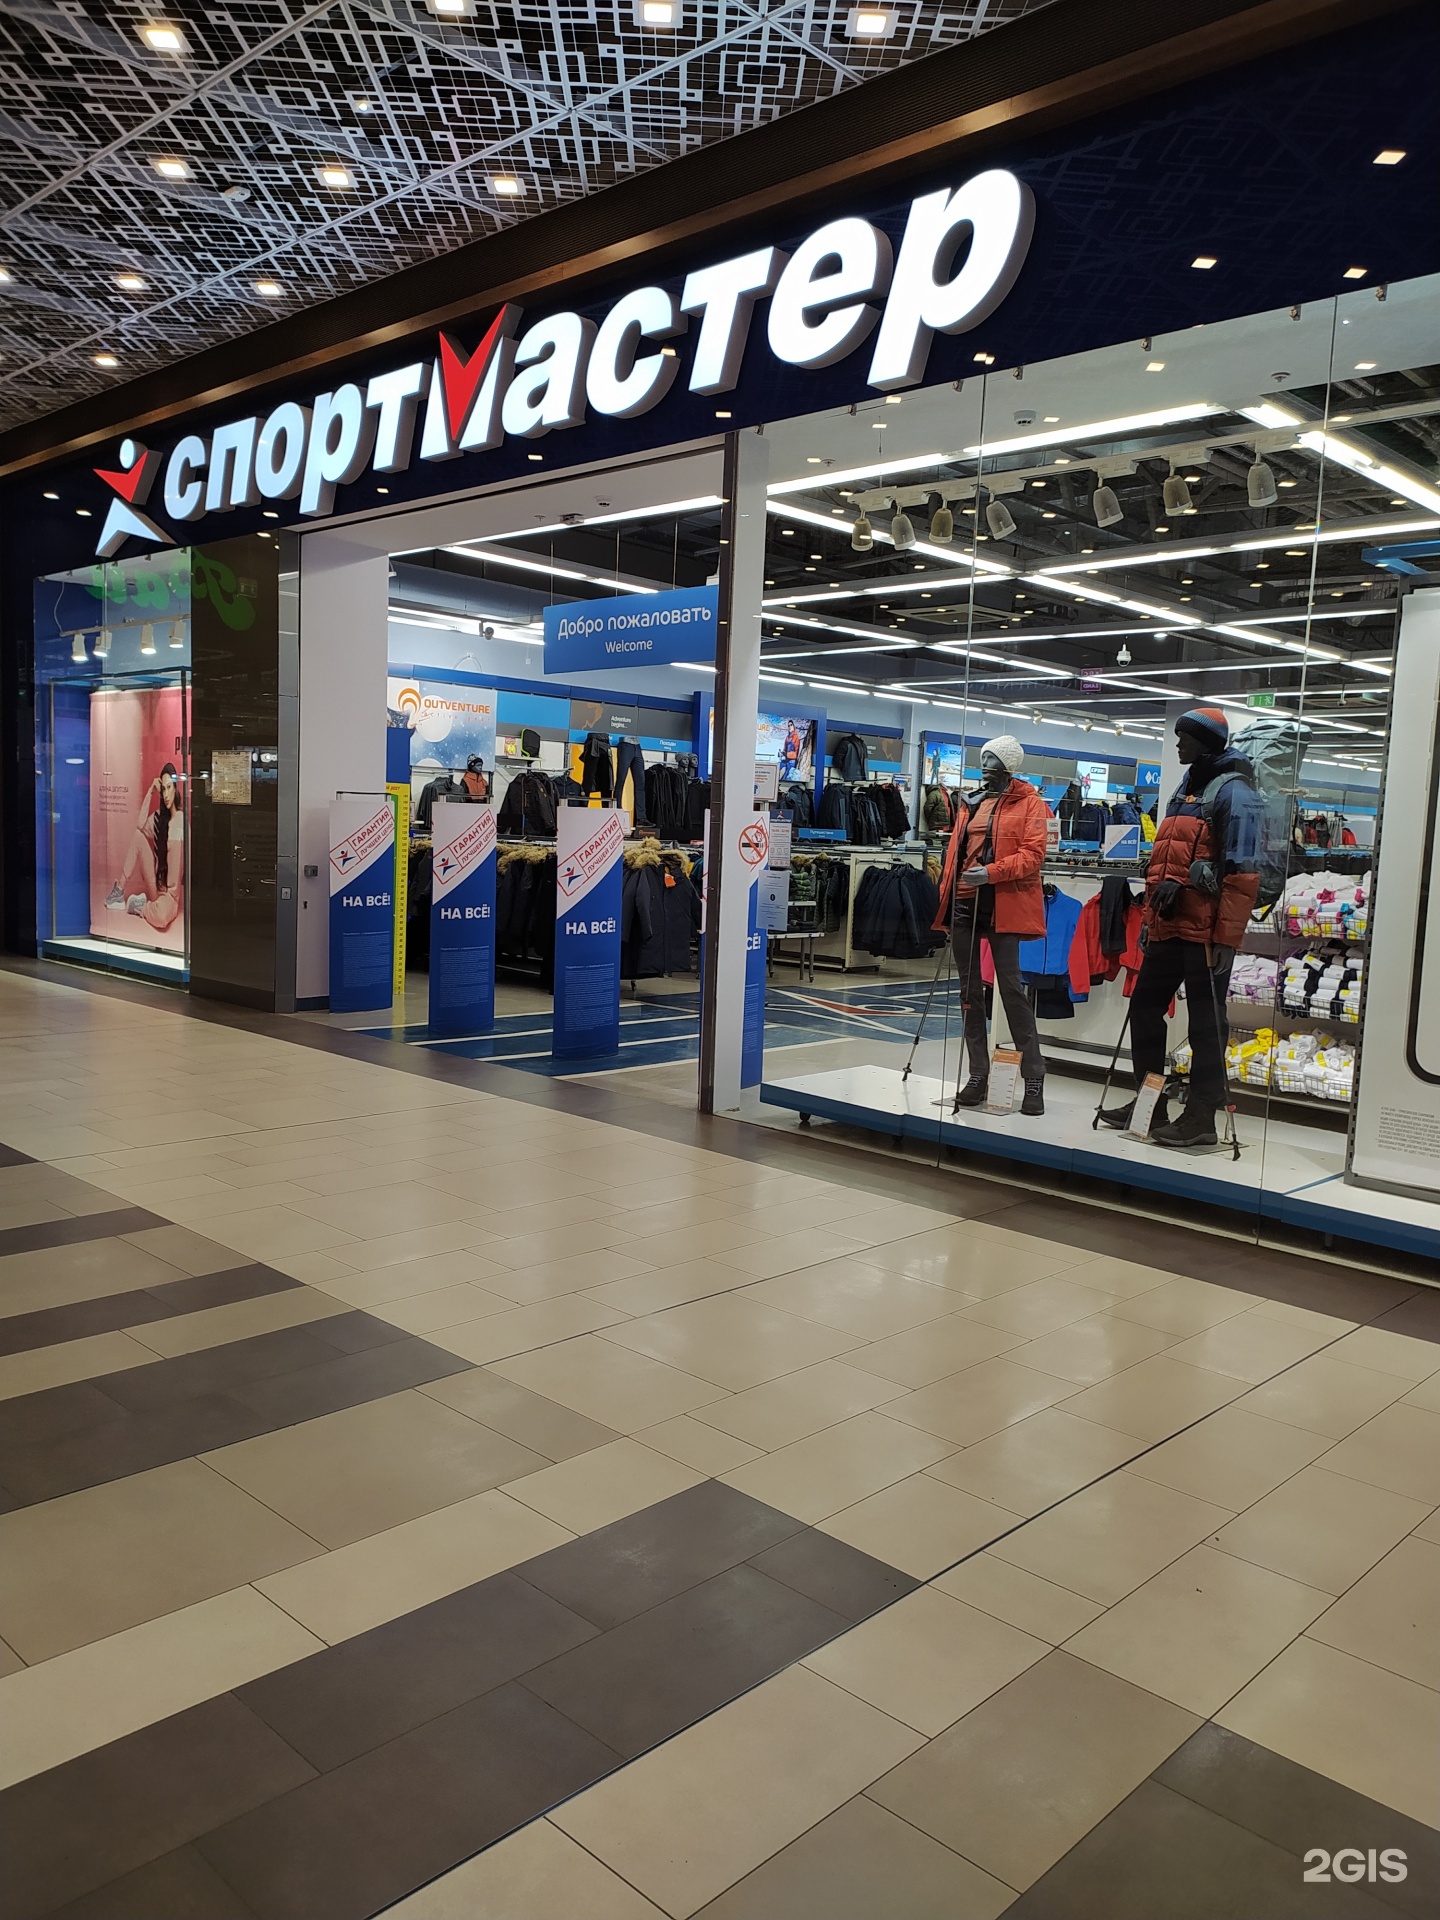 Спортмастер Екатеринбург Интернет Магазин